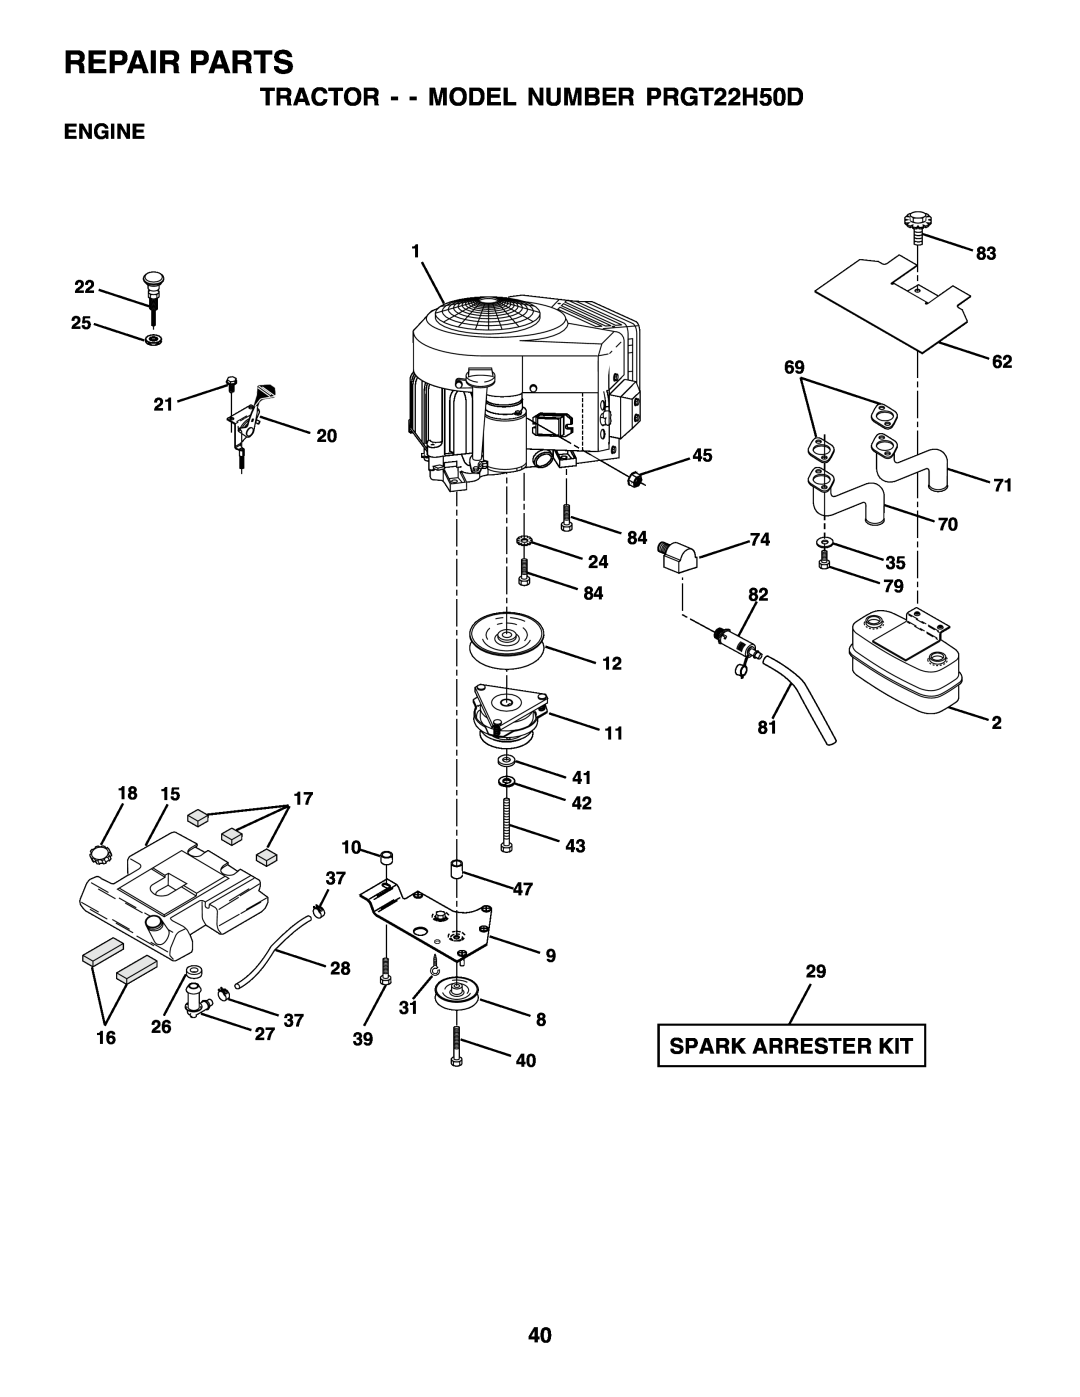 Poulan Repair Parts, TRACTOR - - MODEL NUMBER PRGT22H50D, Engine, Spark Arrester Kit, 22 25 21, 1 20, 83 6962 